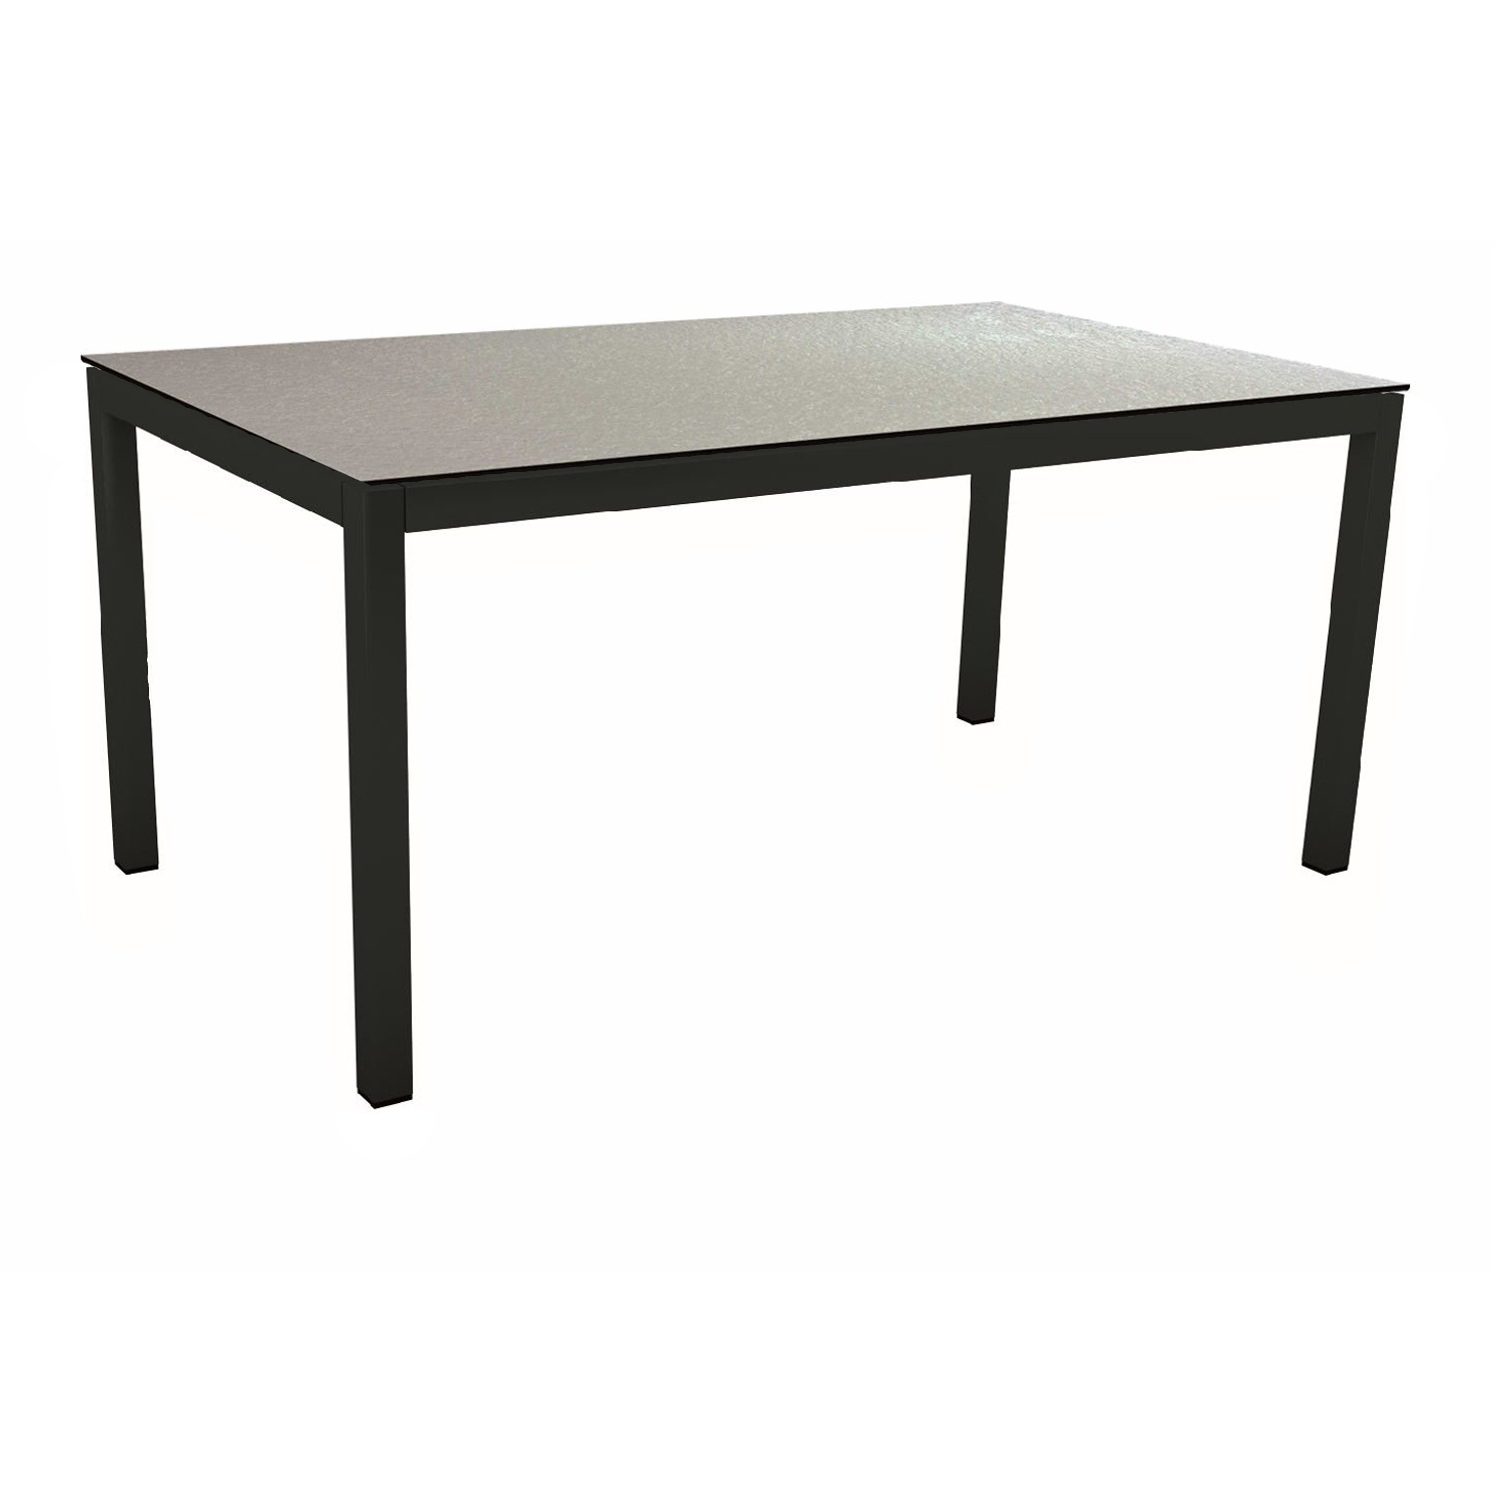 Stern Gartentisch, Gestell Aluminium schwarz matt, Tischplatte HPL Uni Grau, 130x80 cm